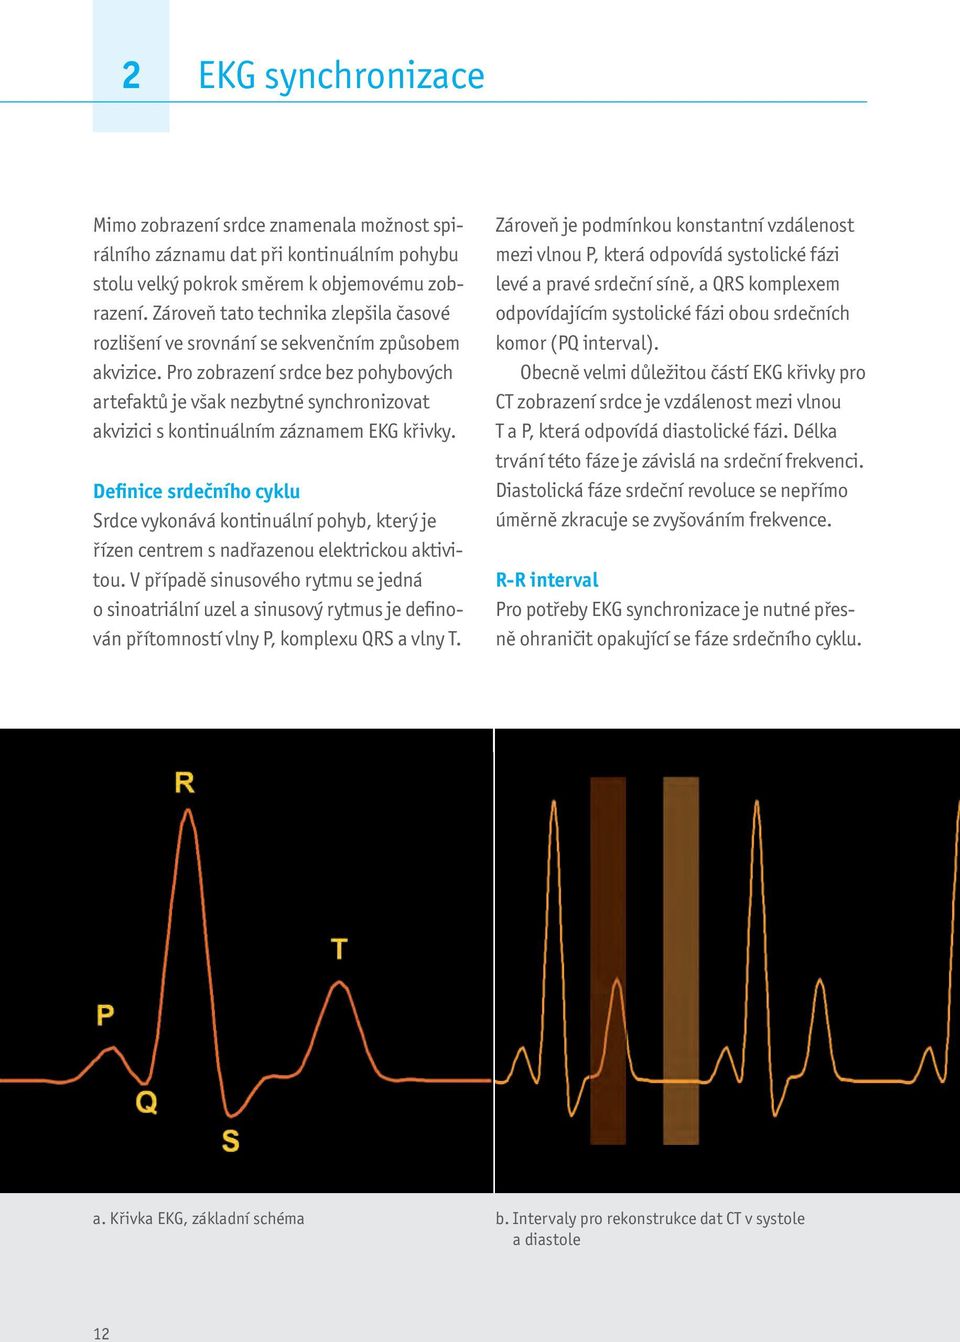 Pro zobrazení srdce bez pohybových artefaktů je však nezbytné synchronizovat akvizici s kontinuálním záznamem EKG křivky.